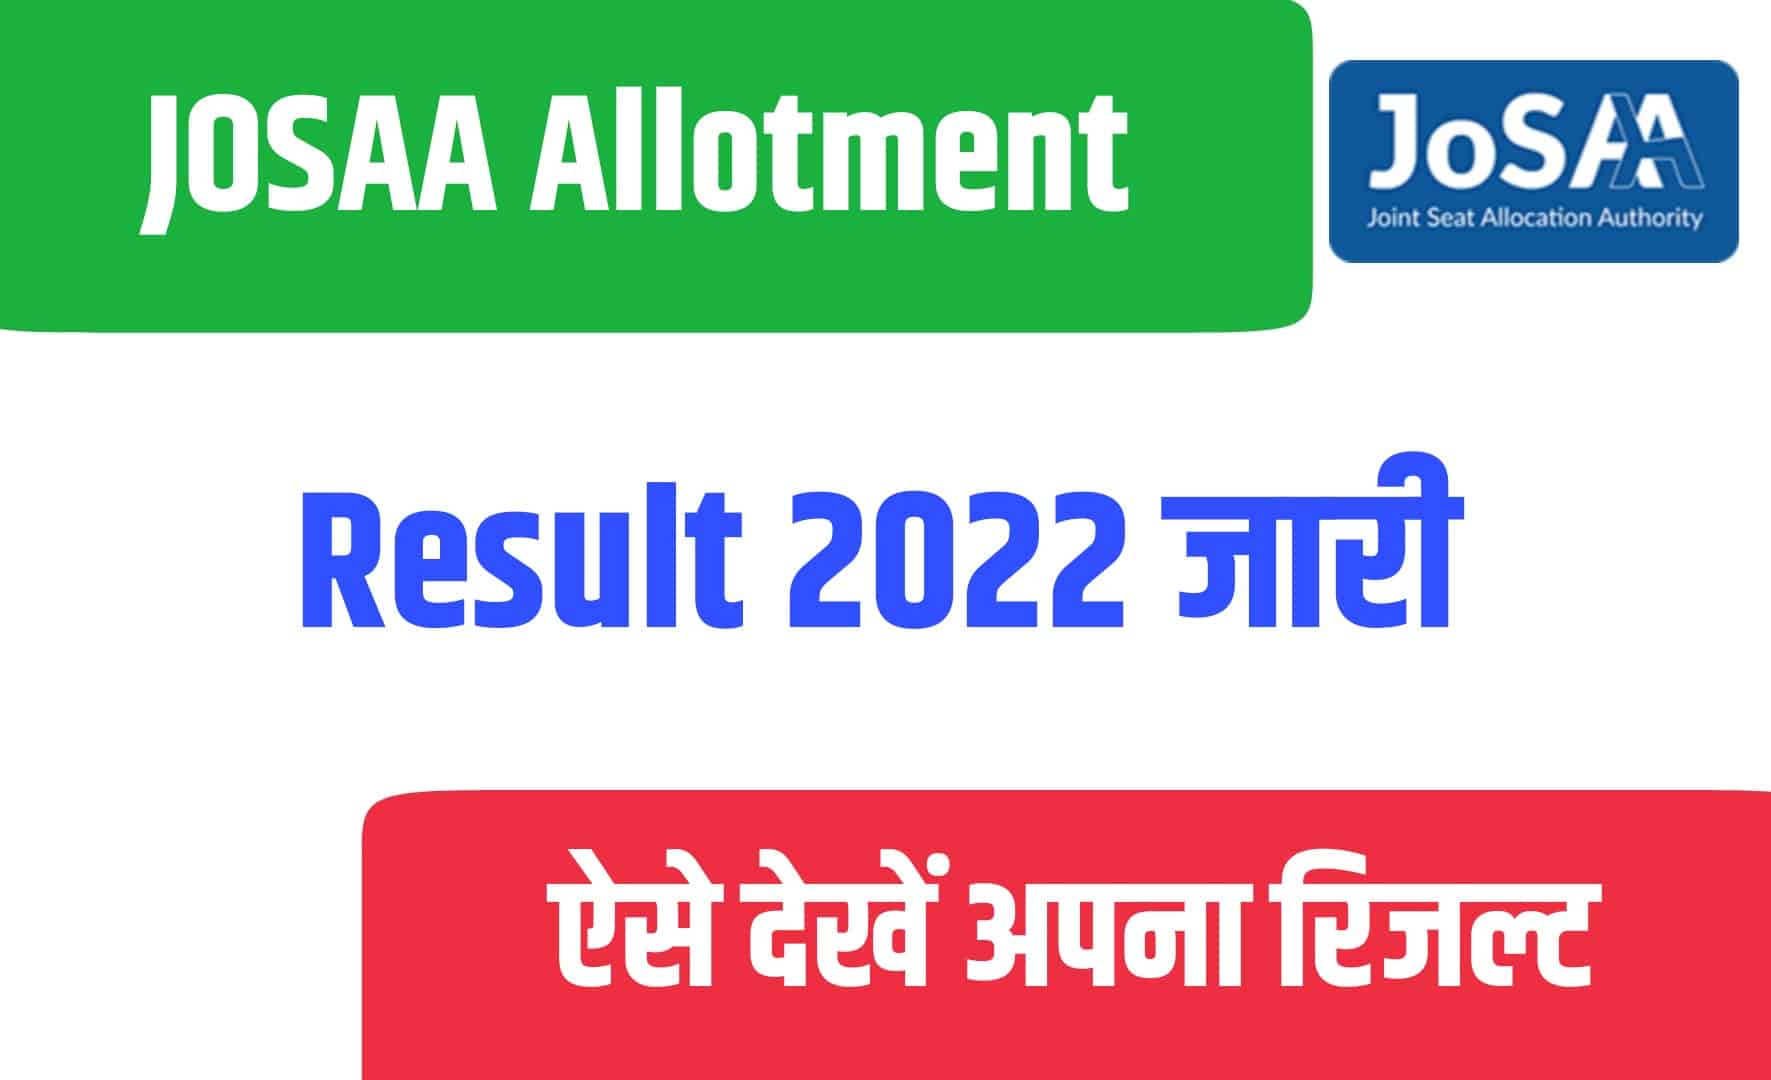 JOSAA Allotment Result 2022 | JOSAA अलॉटमेंट रिजल्ट 2022 जारी